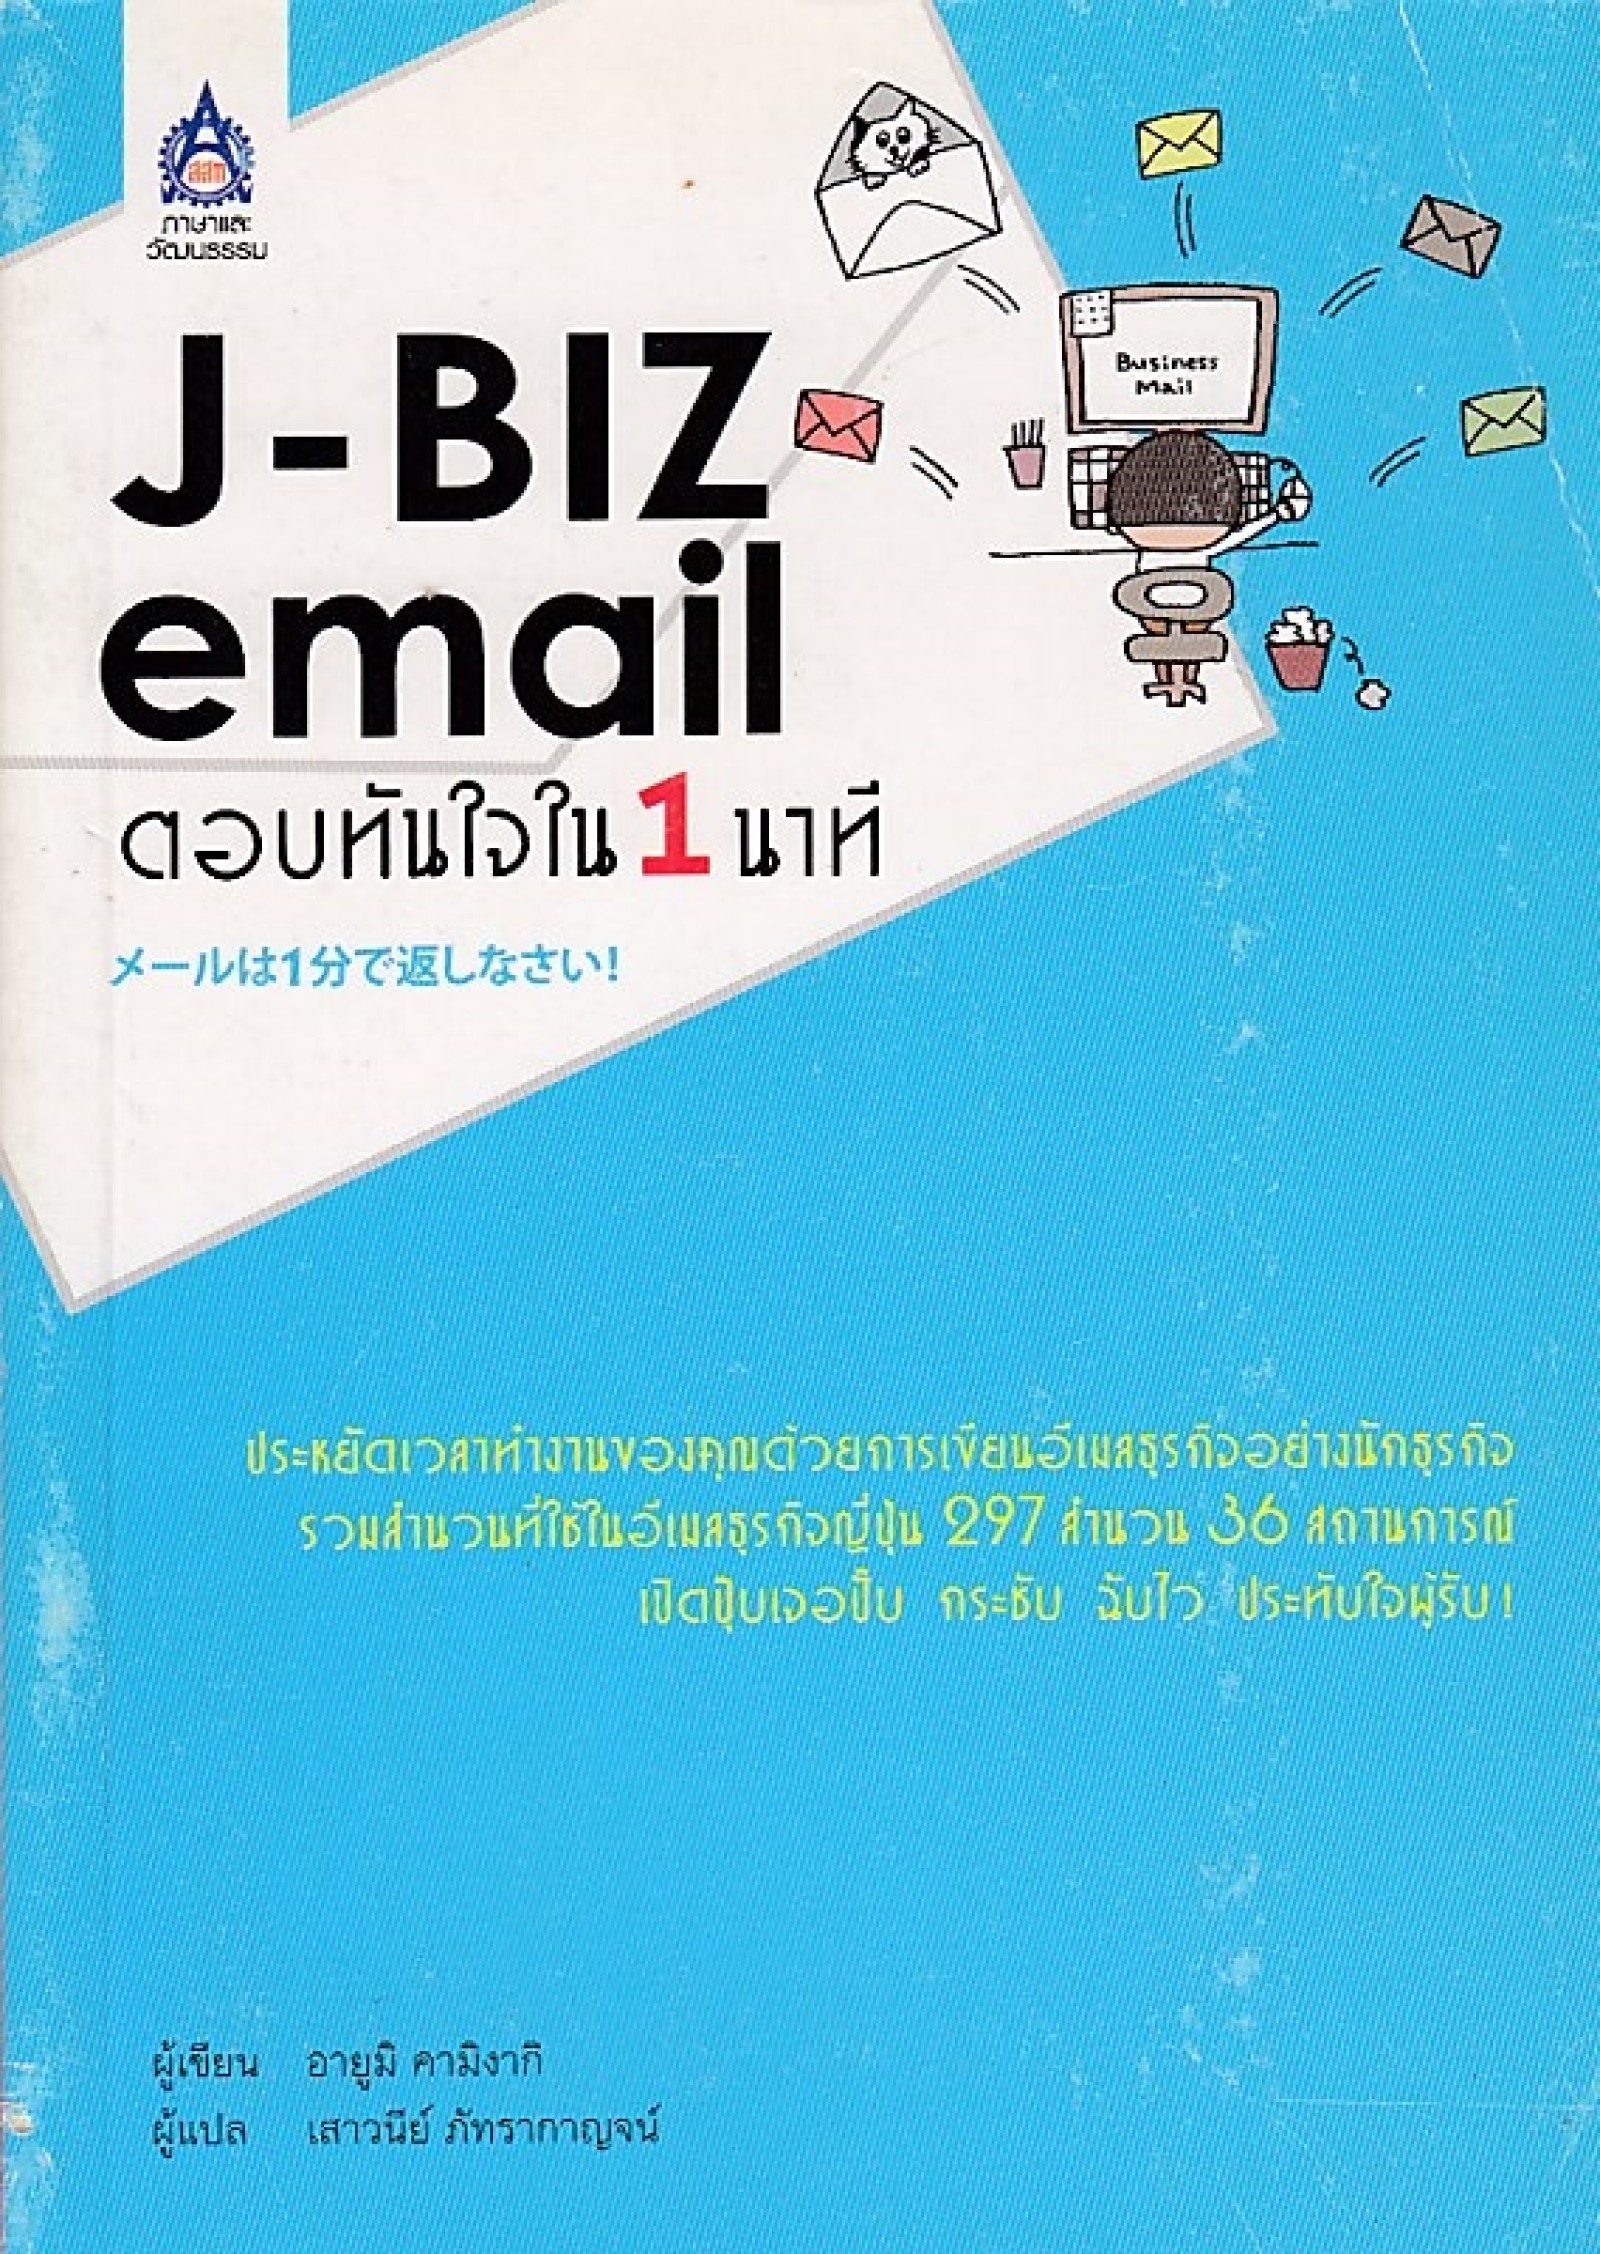 J-BIZ EMAIL ตอบทันใจใน 1 นาที